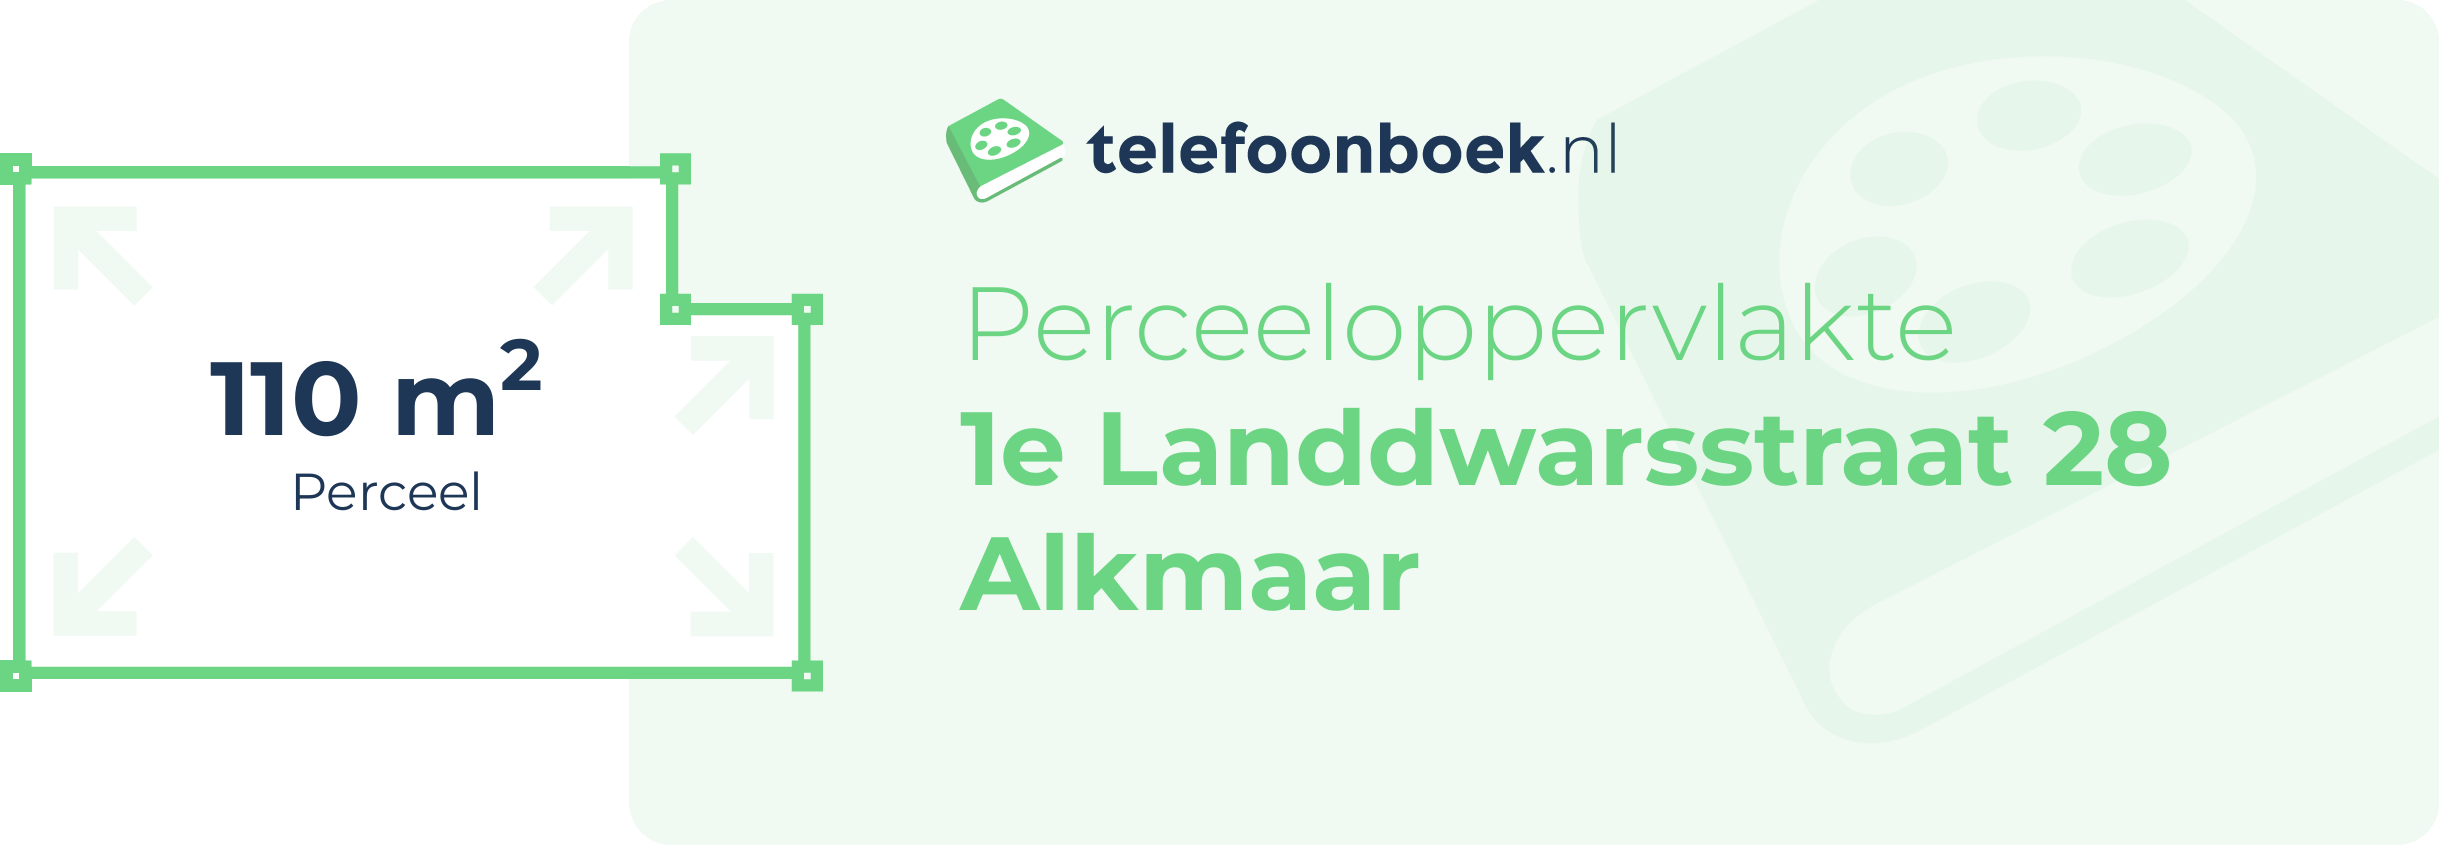 Perceeloppervlakte 1e Landdwarsstraat 28 Alkmaar